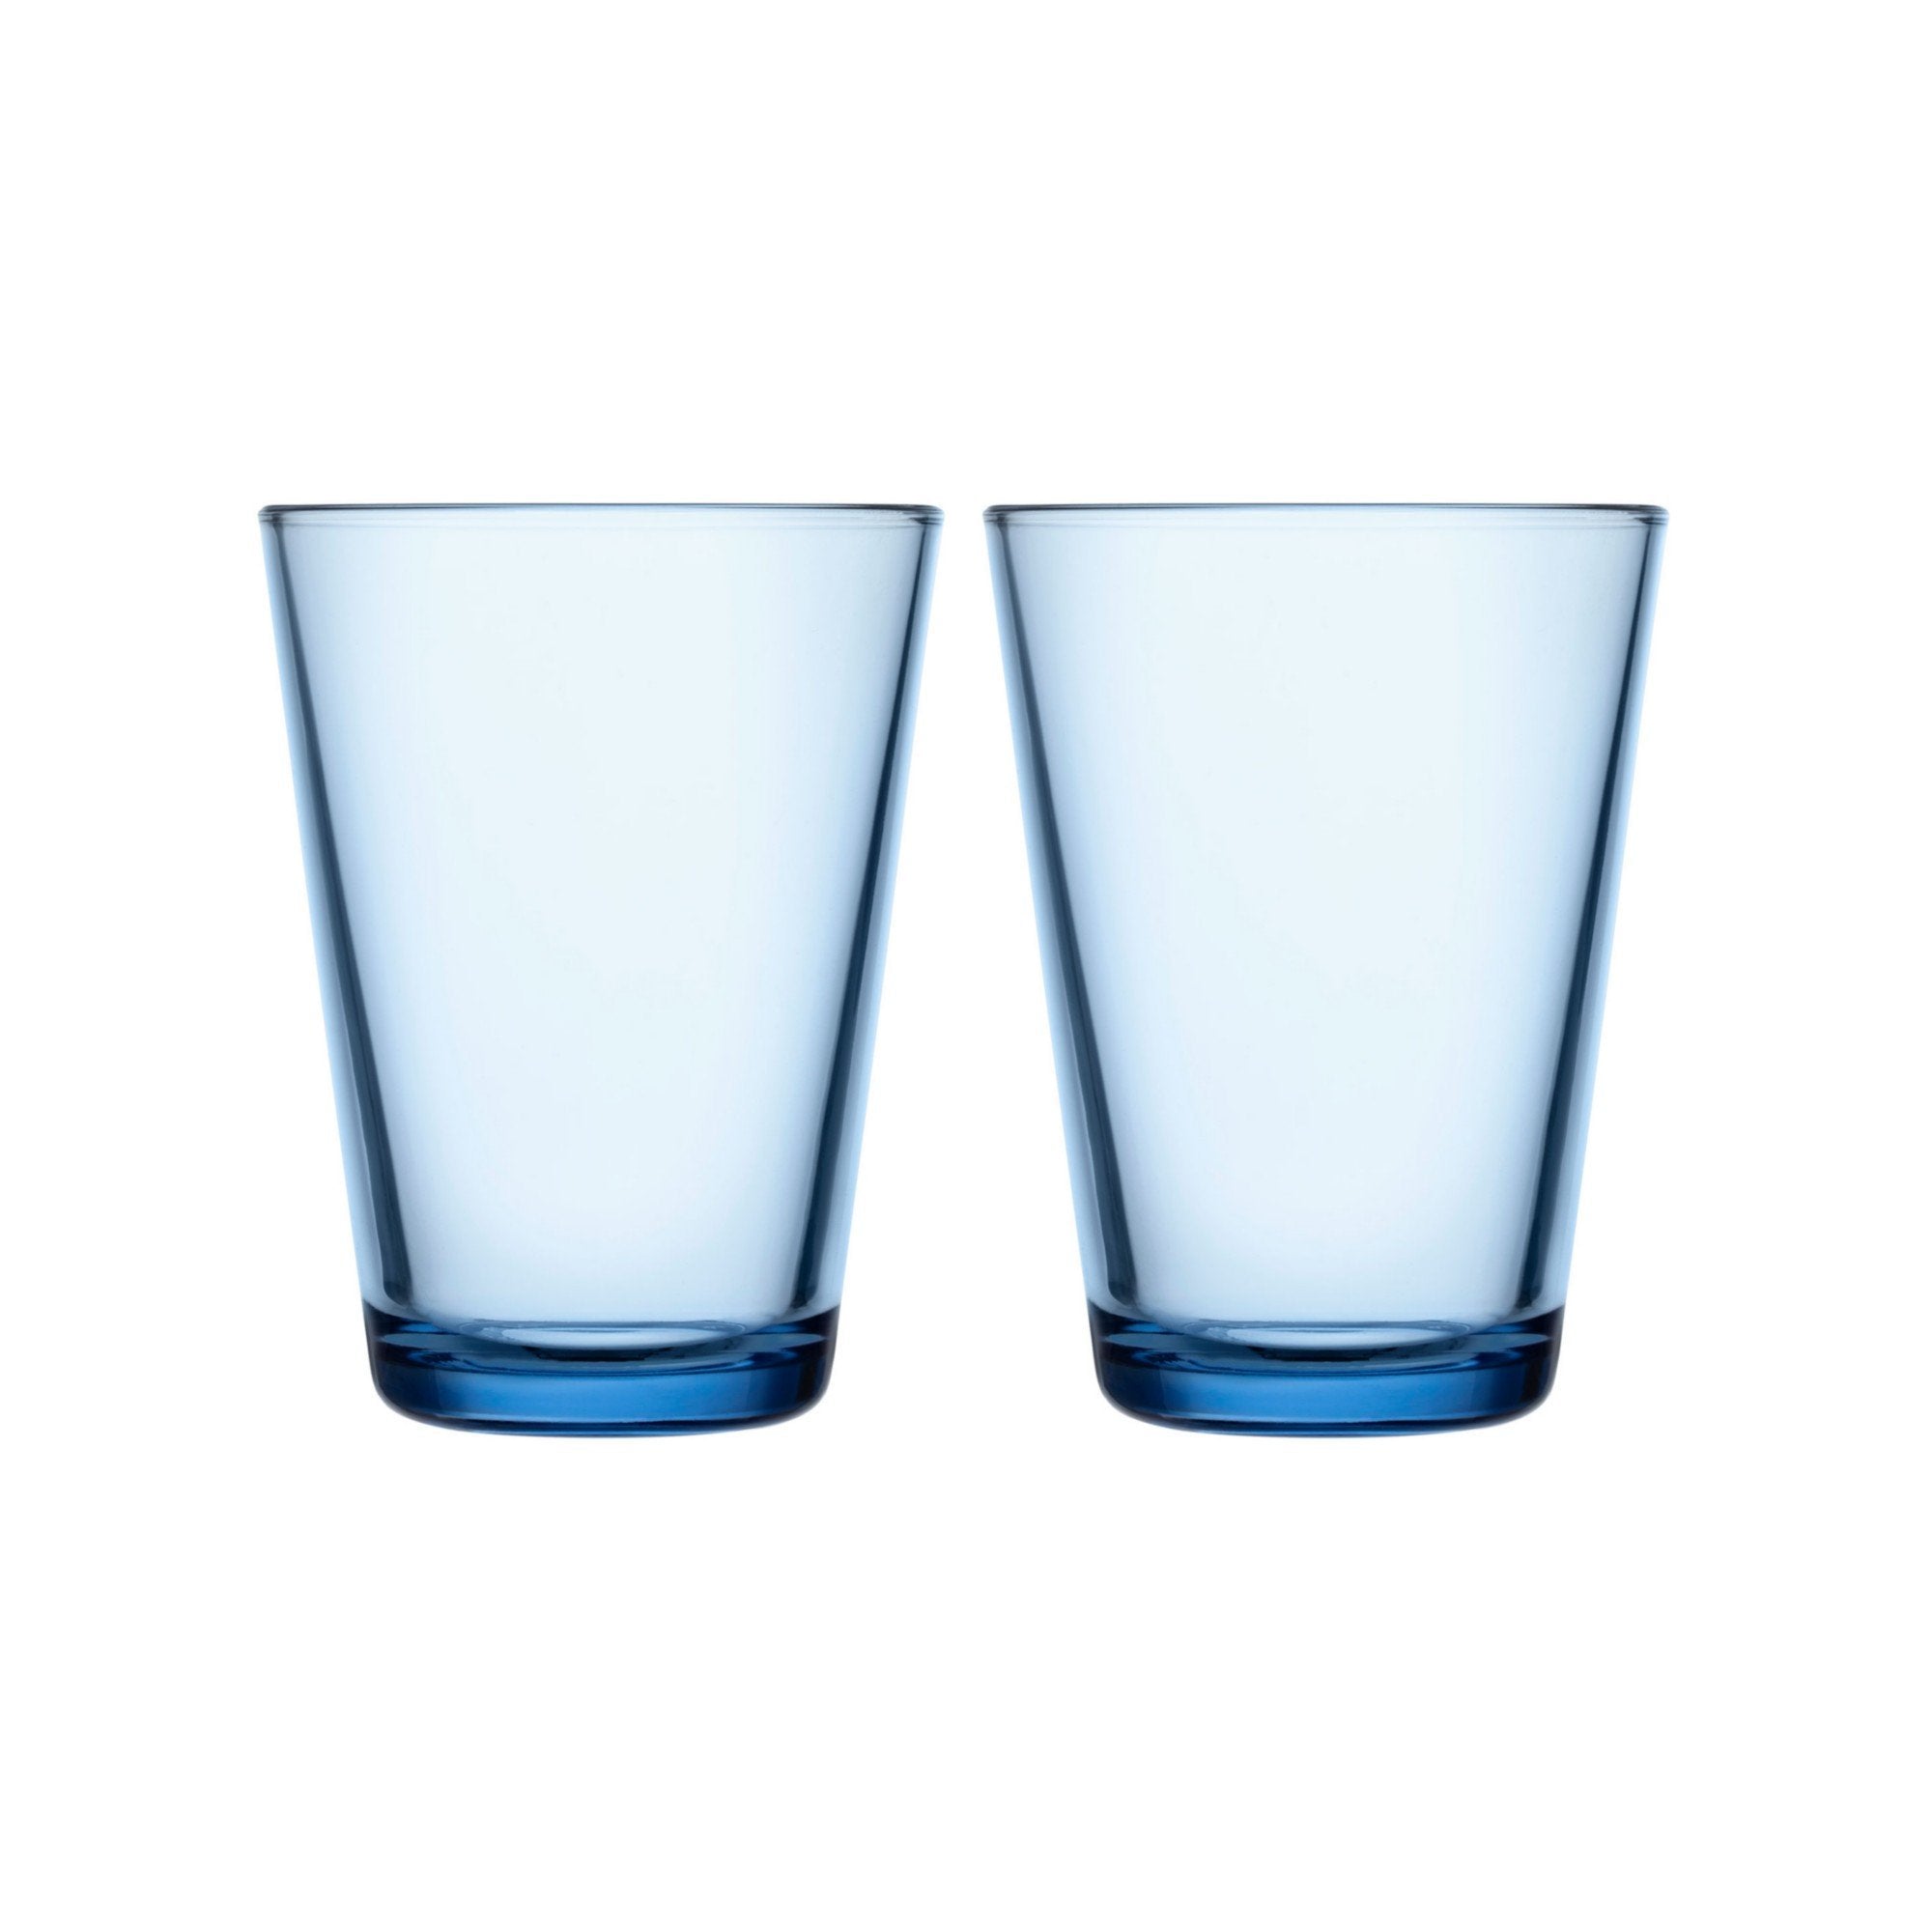 Iittala Katio Drinking Glass Aqua 40Cl, 2 stk.